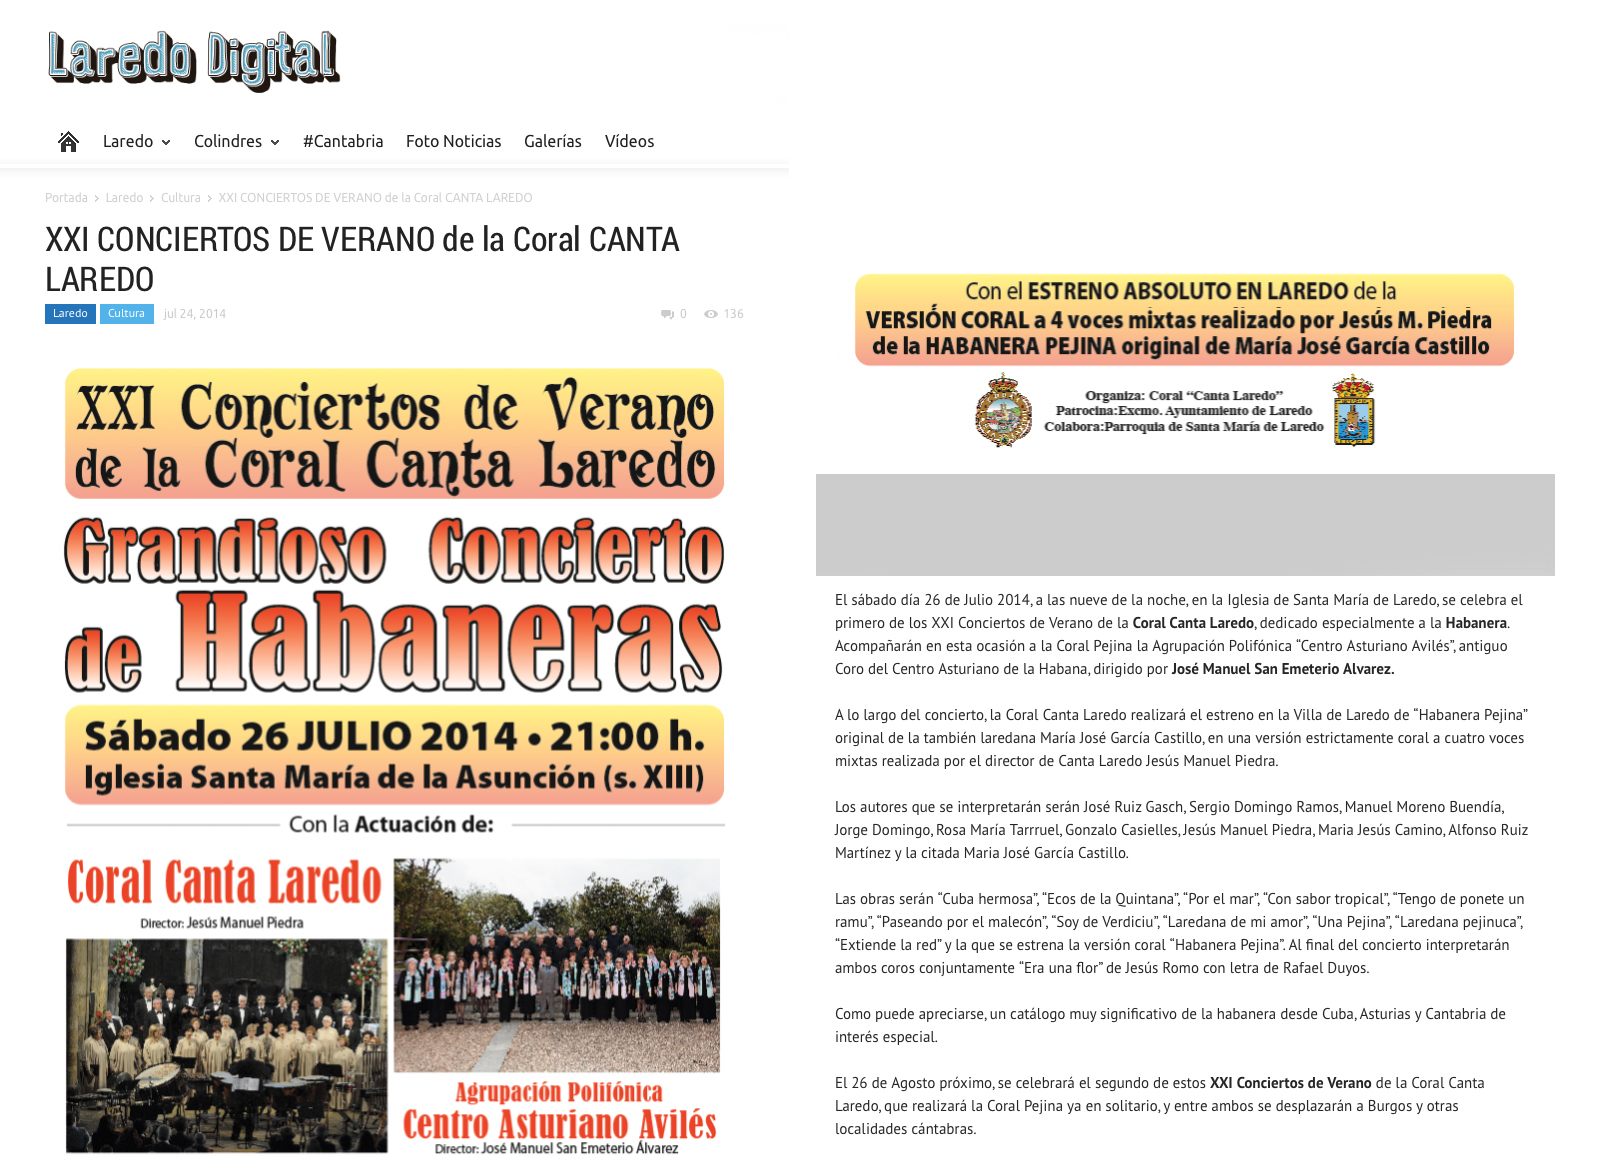 2014 julio 26 - Conciertos de Verano Coral de Laredo